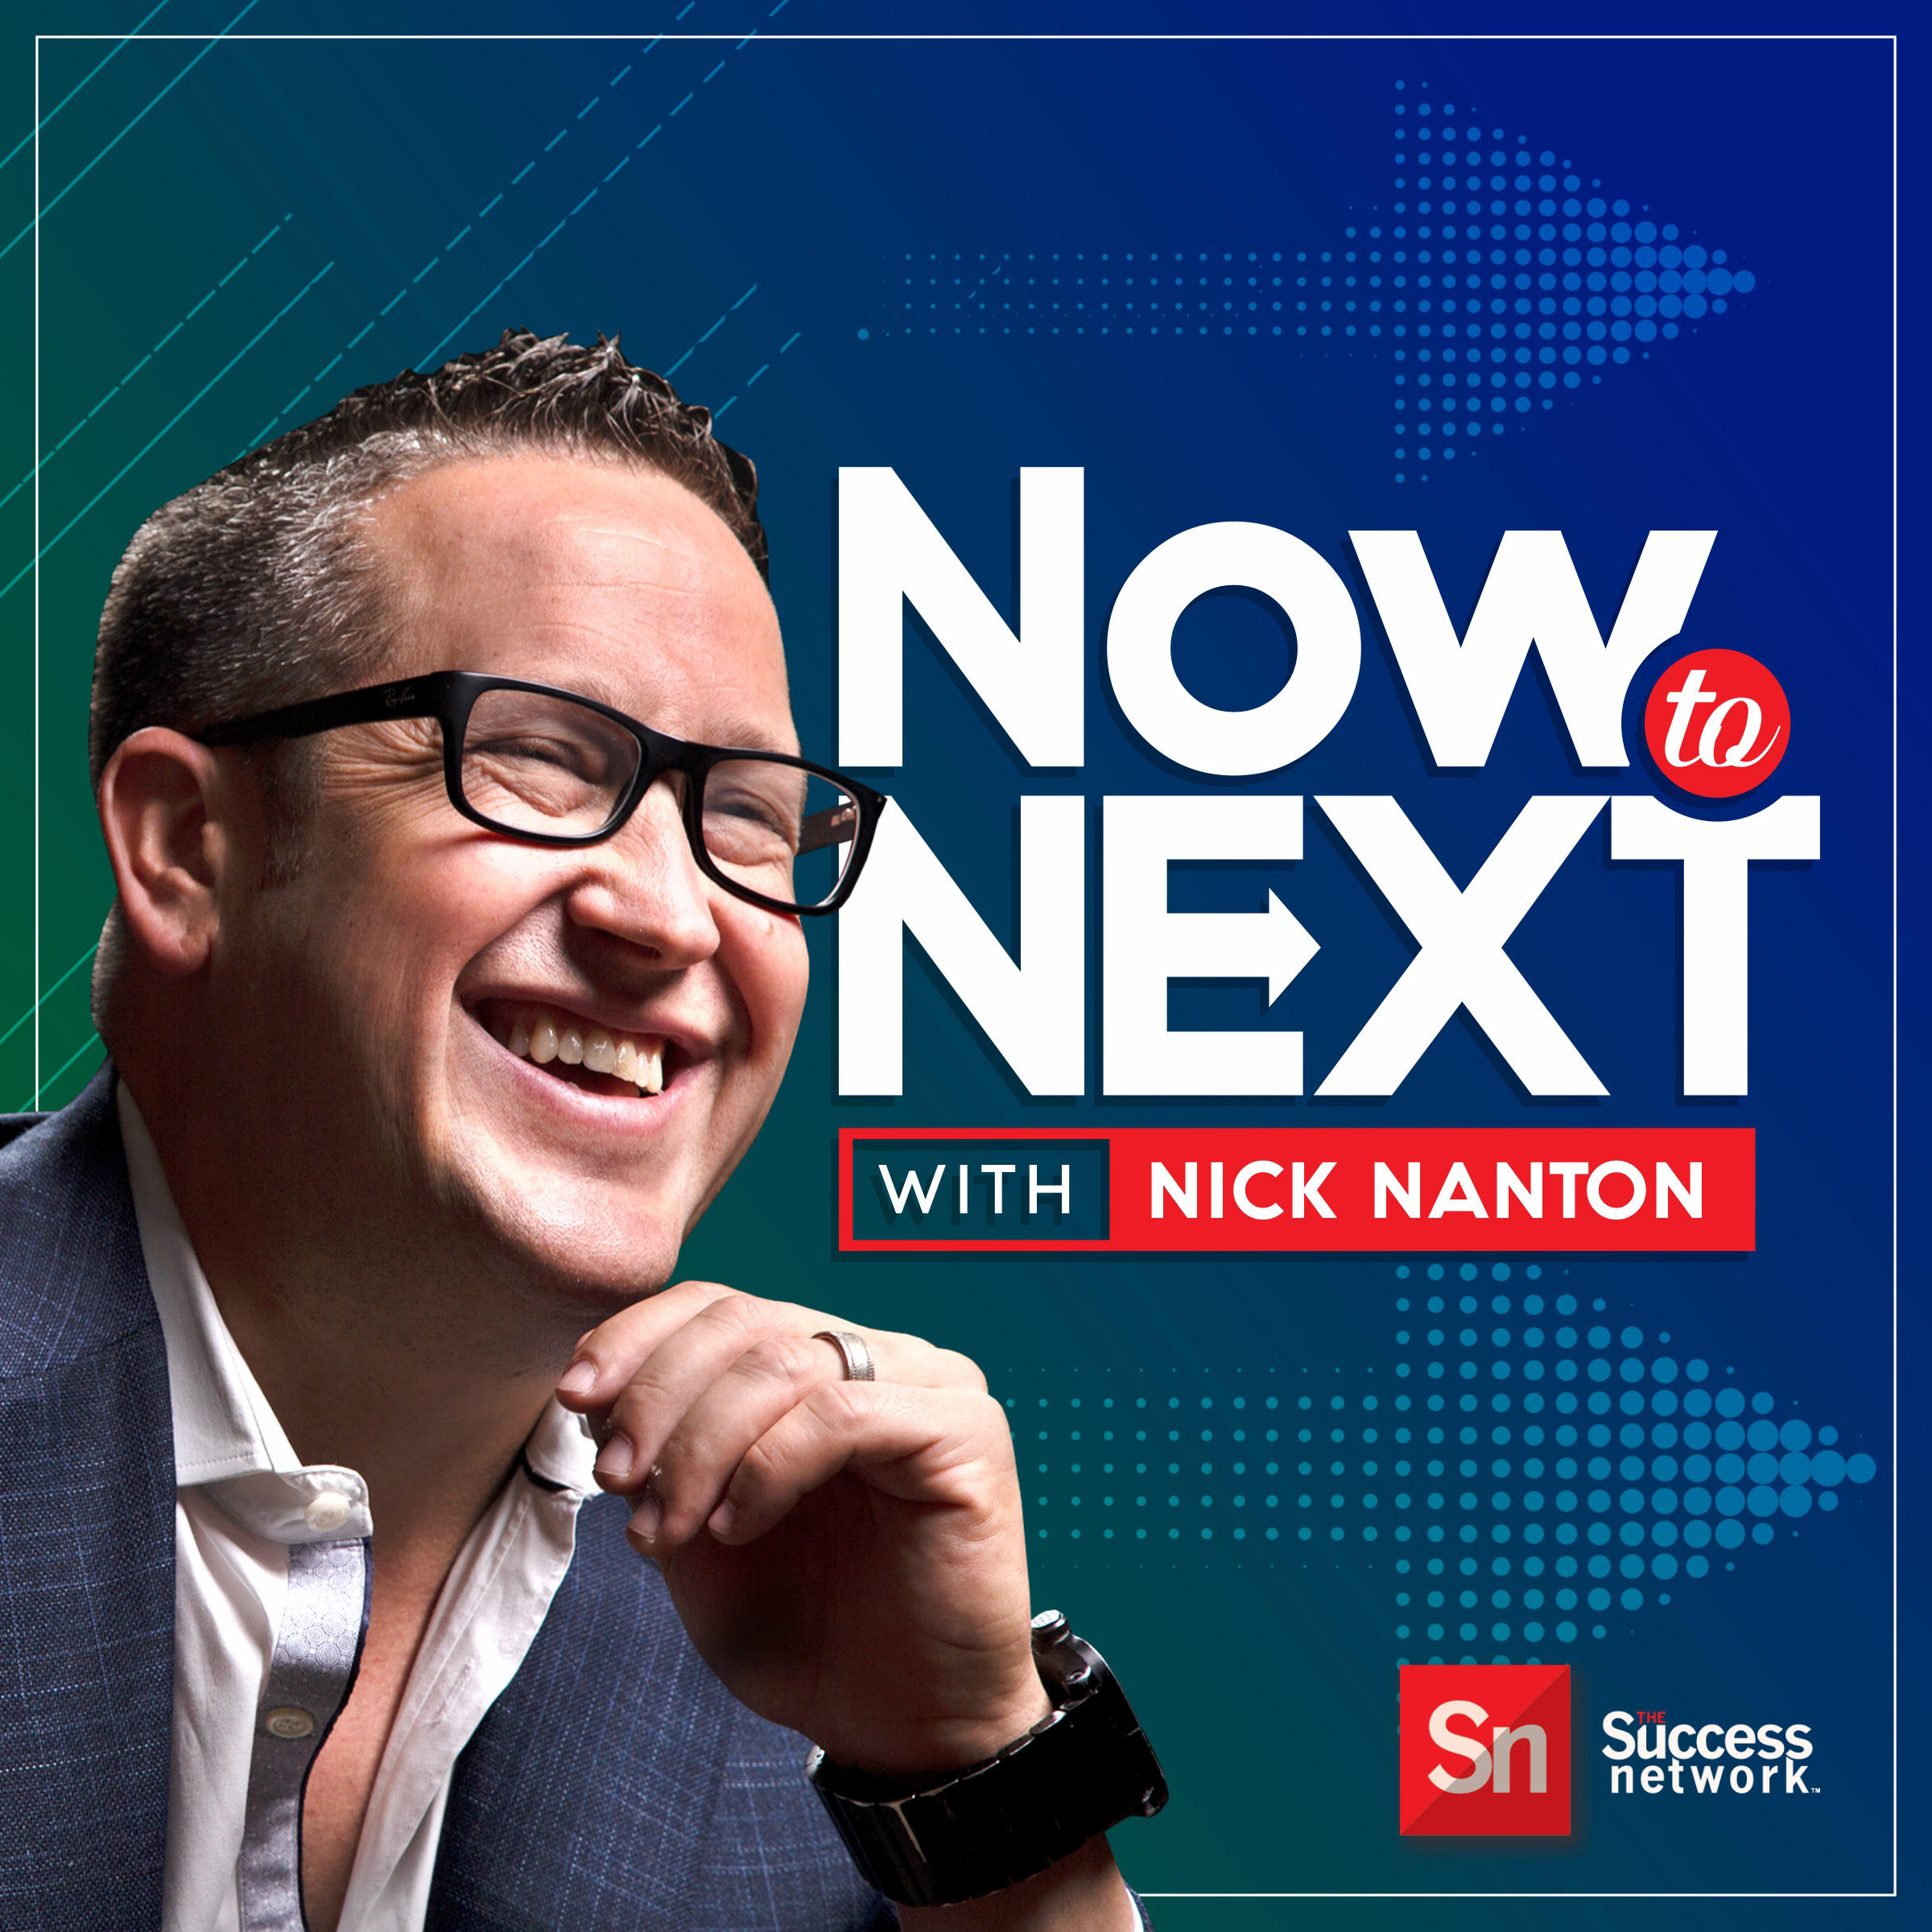 Now to Next with Nick Nanton Feat. Keith Ferrazzi